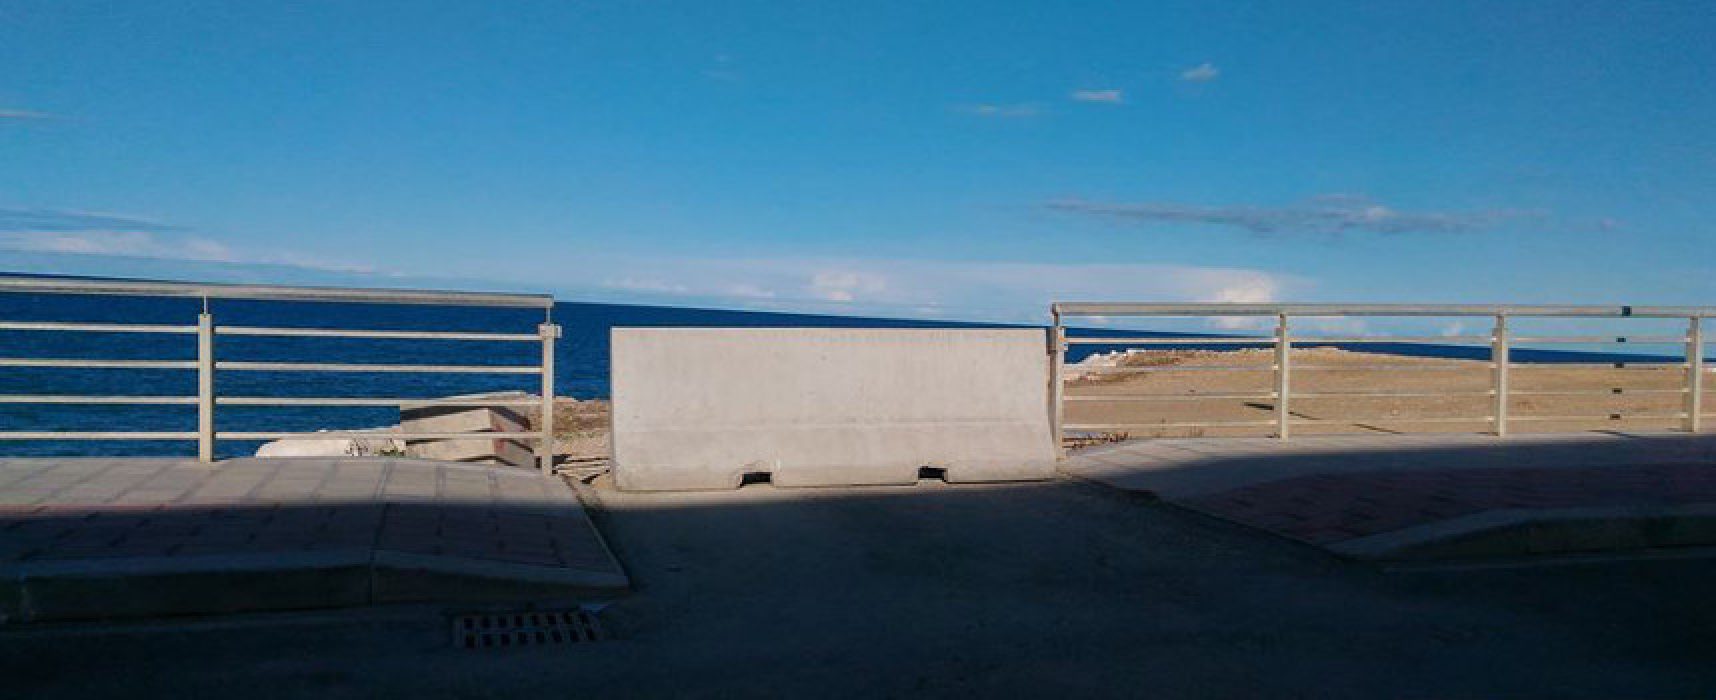 Barriera ingresso pista ciclabile costa di Levante, Federazione Pro Natura: “Non basta”